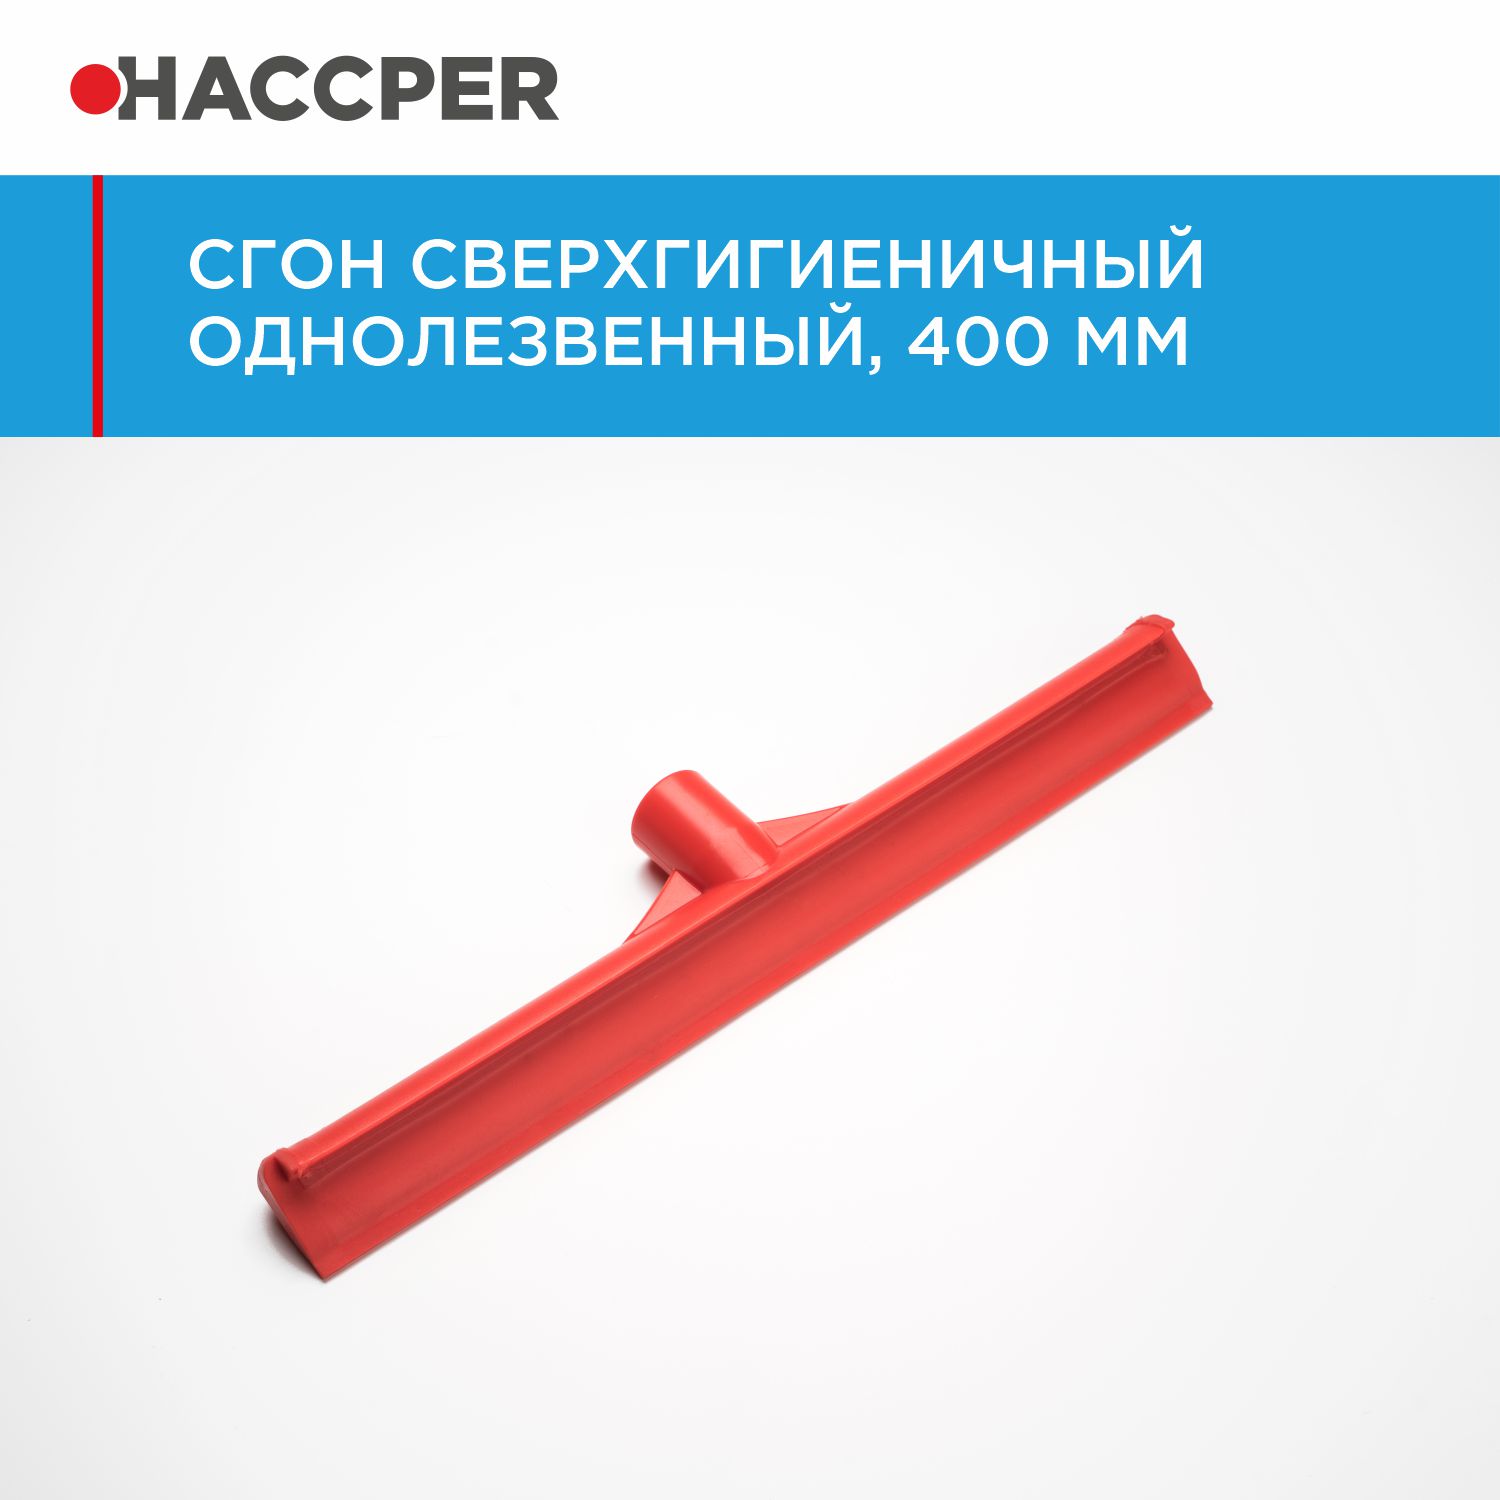 Сгон HACCPER сверхгигиеничный однолезвенный, 400 мм, красный